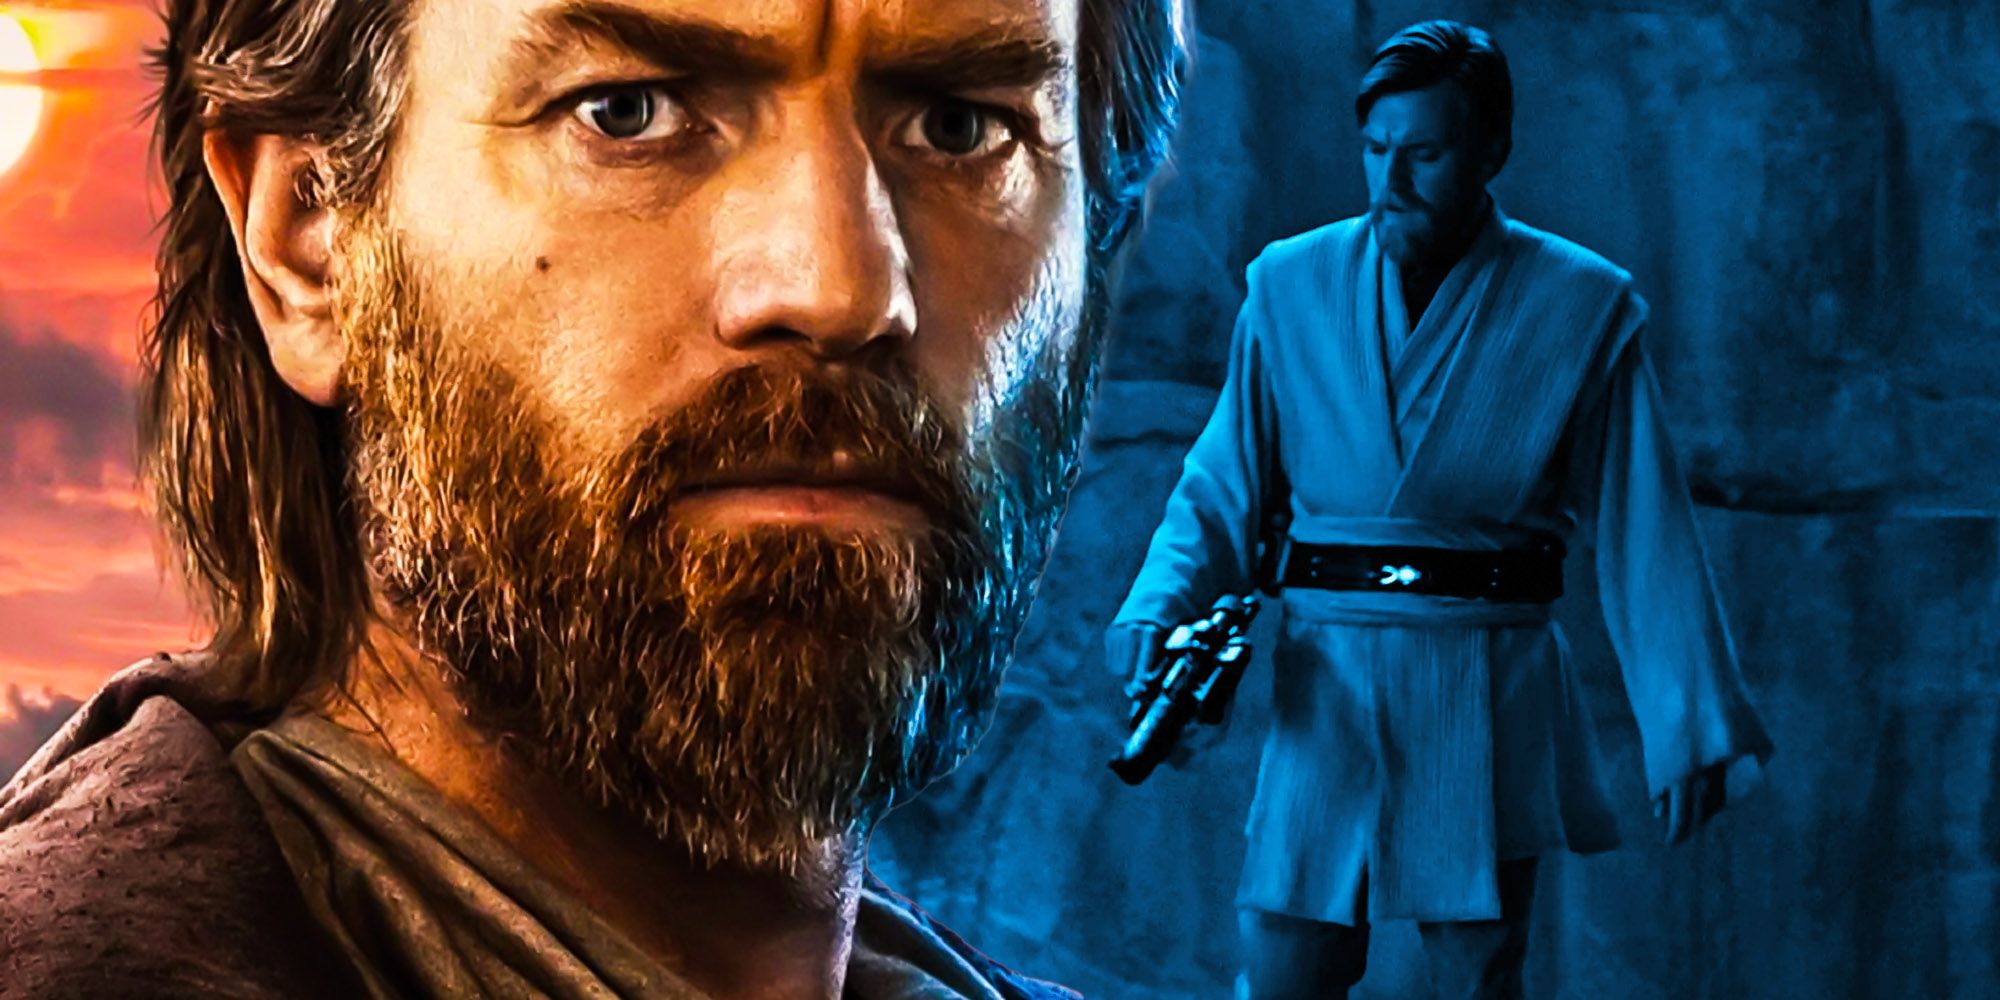 El tráiler de Obi-Wan obliga a Kenobi a traicionar su creencia “incivilizada”